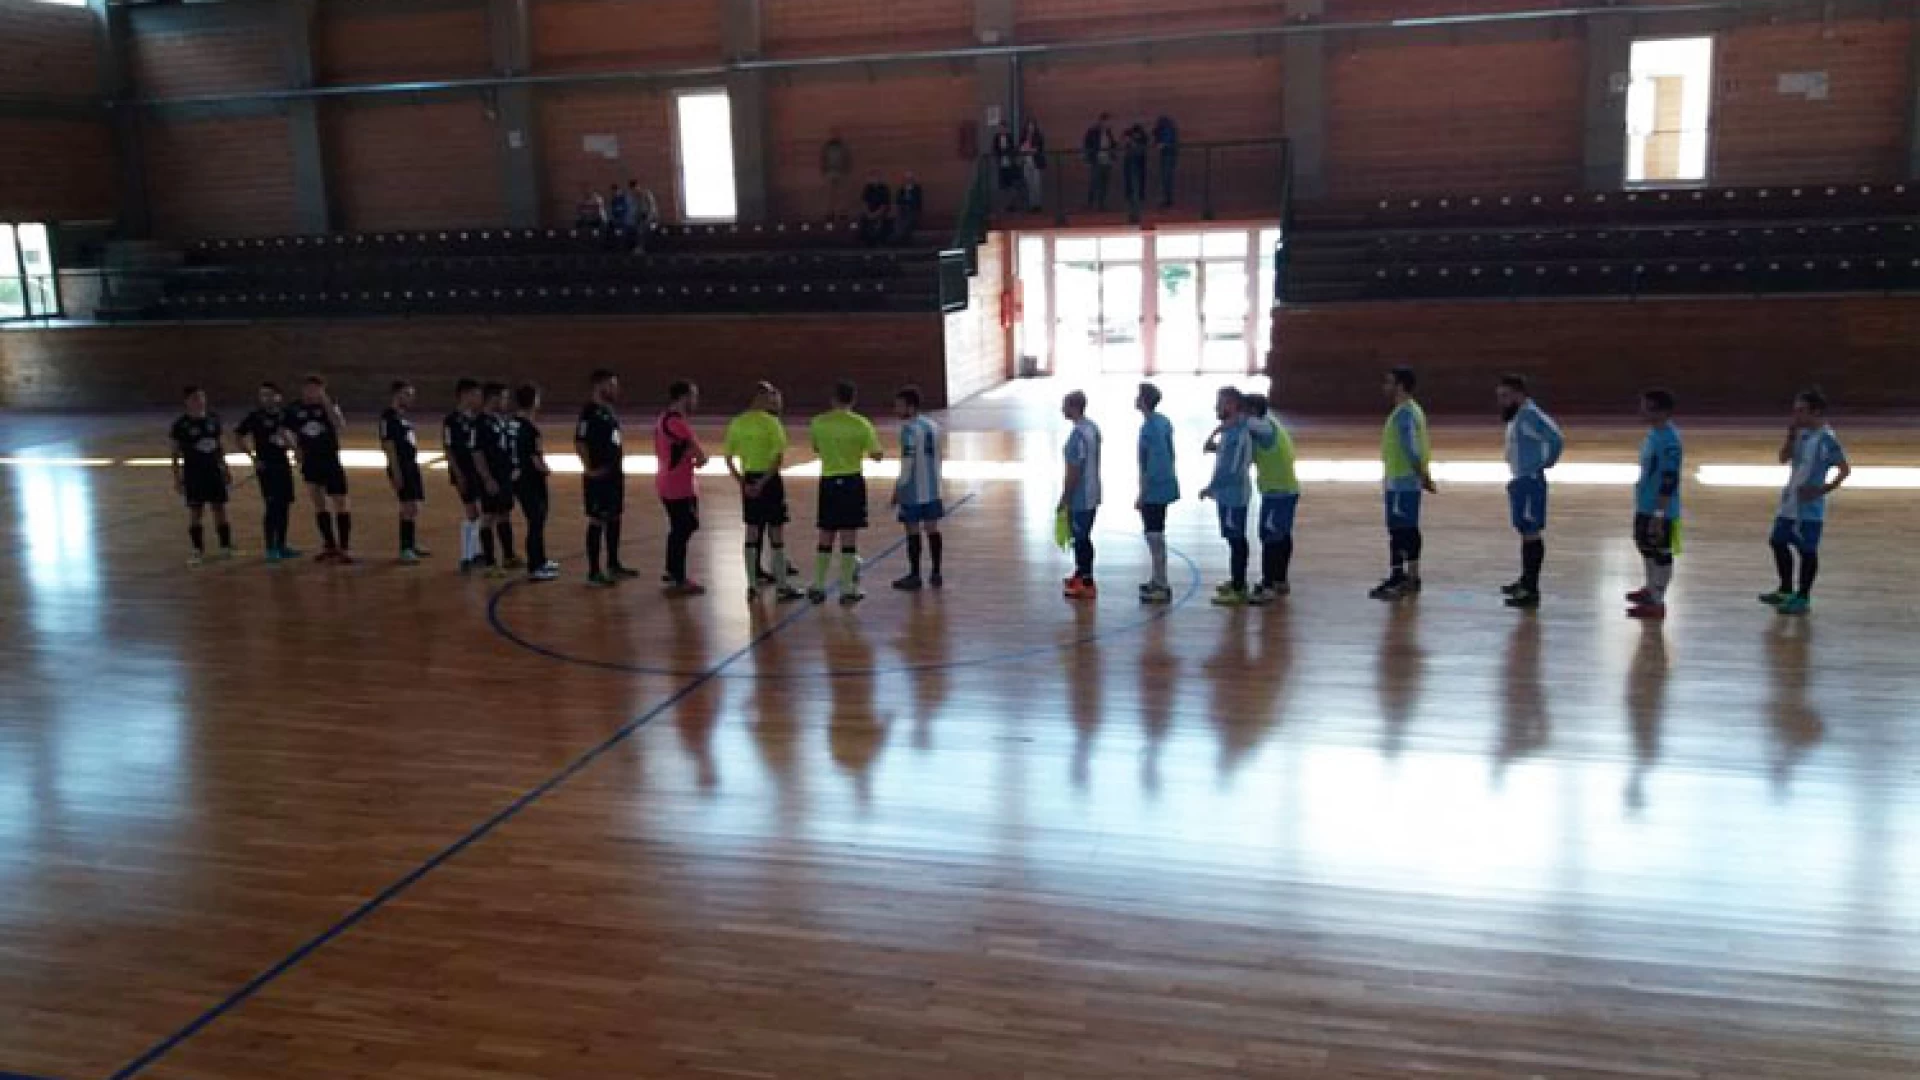 Calcio a 5: la Faga pareggia contro la capolista Circolo La Nebbia. La Futsal Acquaviva sconfitta dalla Miki Mike. La salvezza diretta in gioco all’ultima giornata.